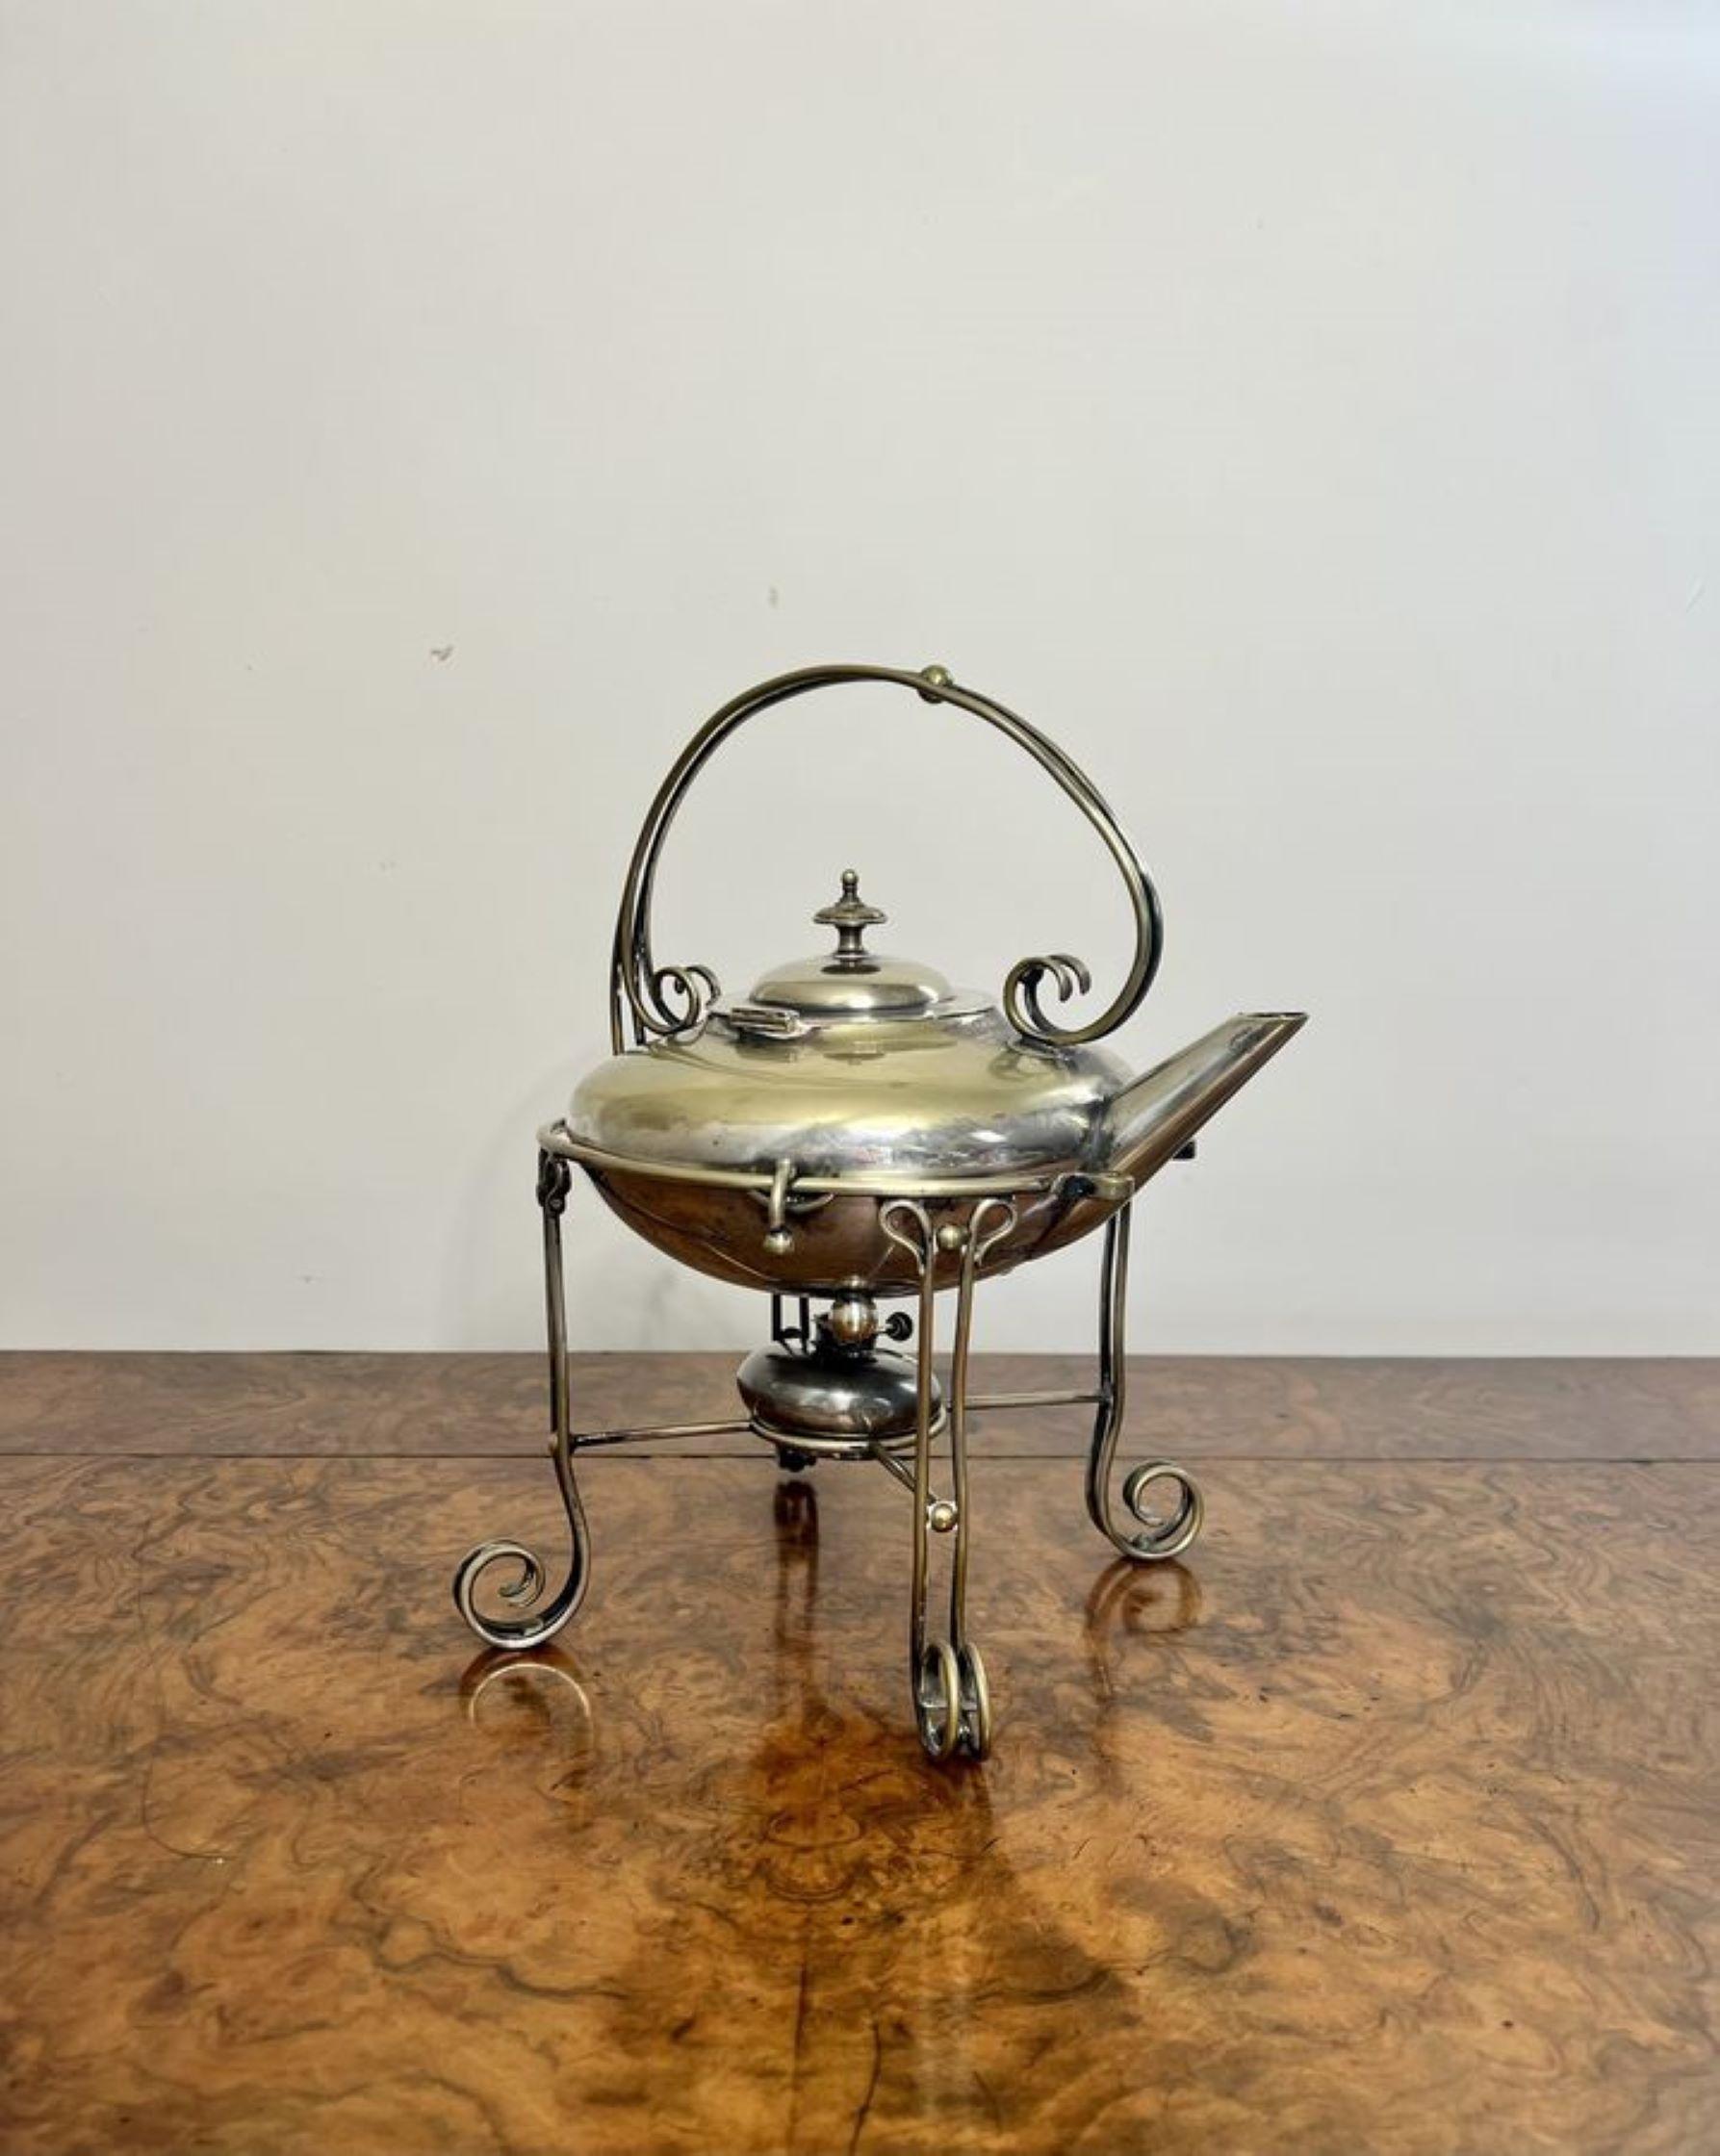 Bouilloire de qualité en métal argenté de l'époque édouardienne, montée sur un support orné en métal argenté, avec le brûleur d'origine, reposant sur quatre pieds en forme.

D. 1900